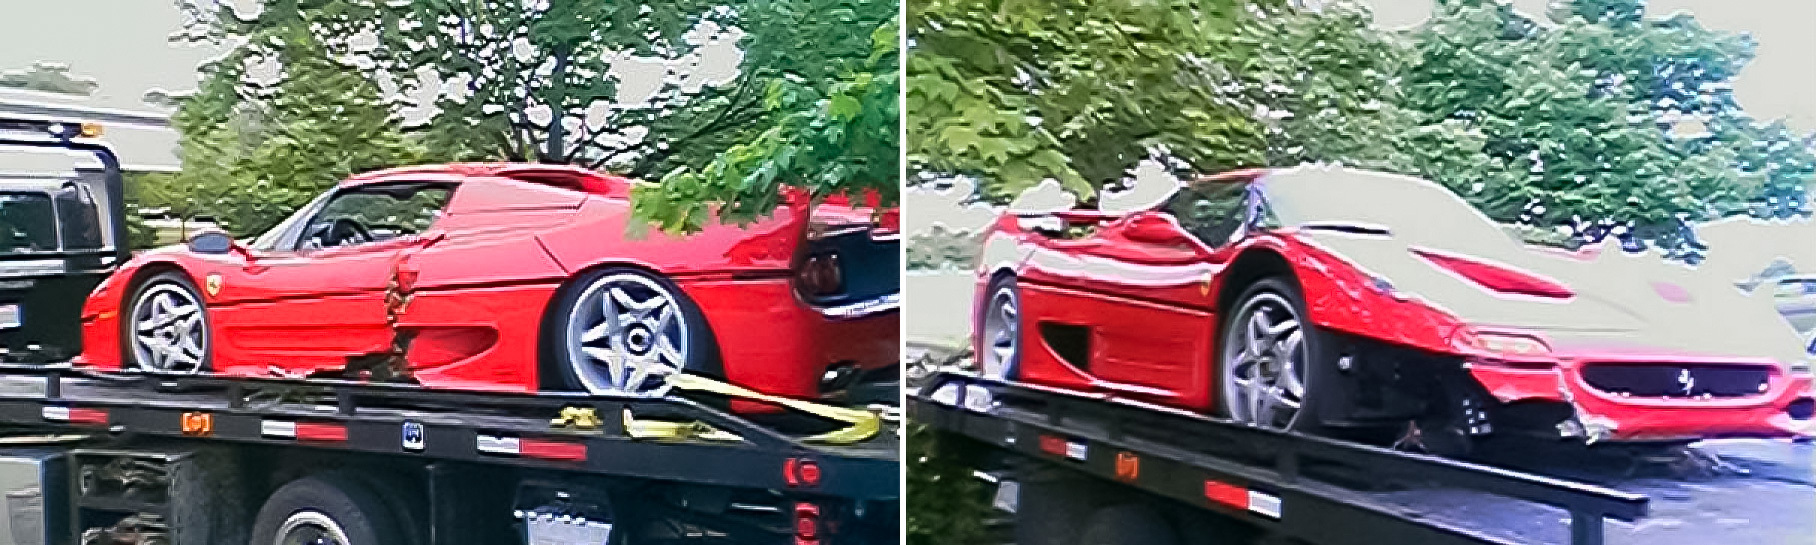 Угнанный Ferrari, который нашли и разбили агенты ФБР